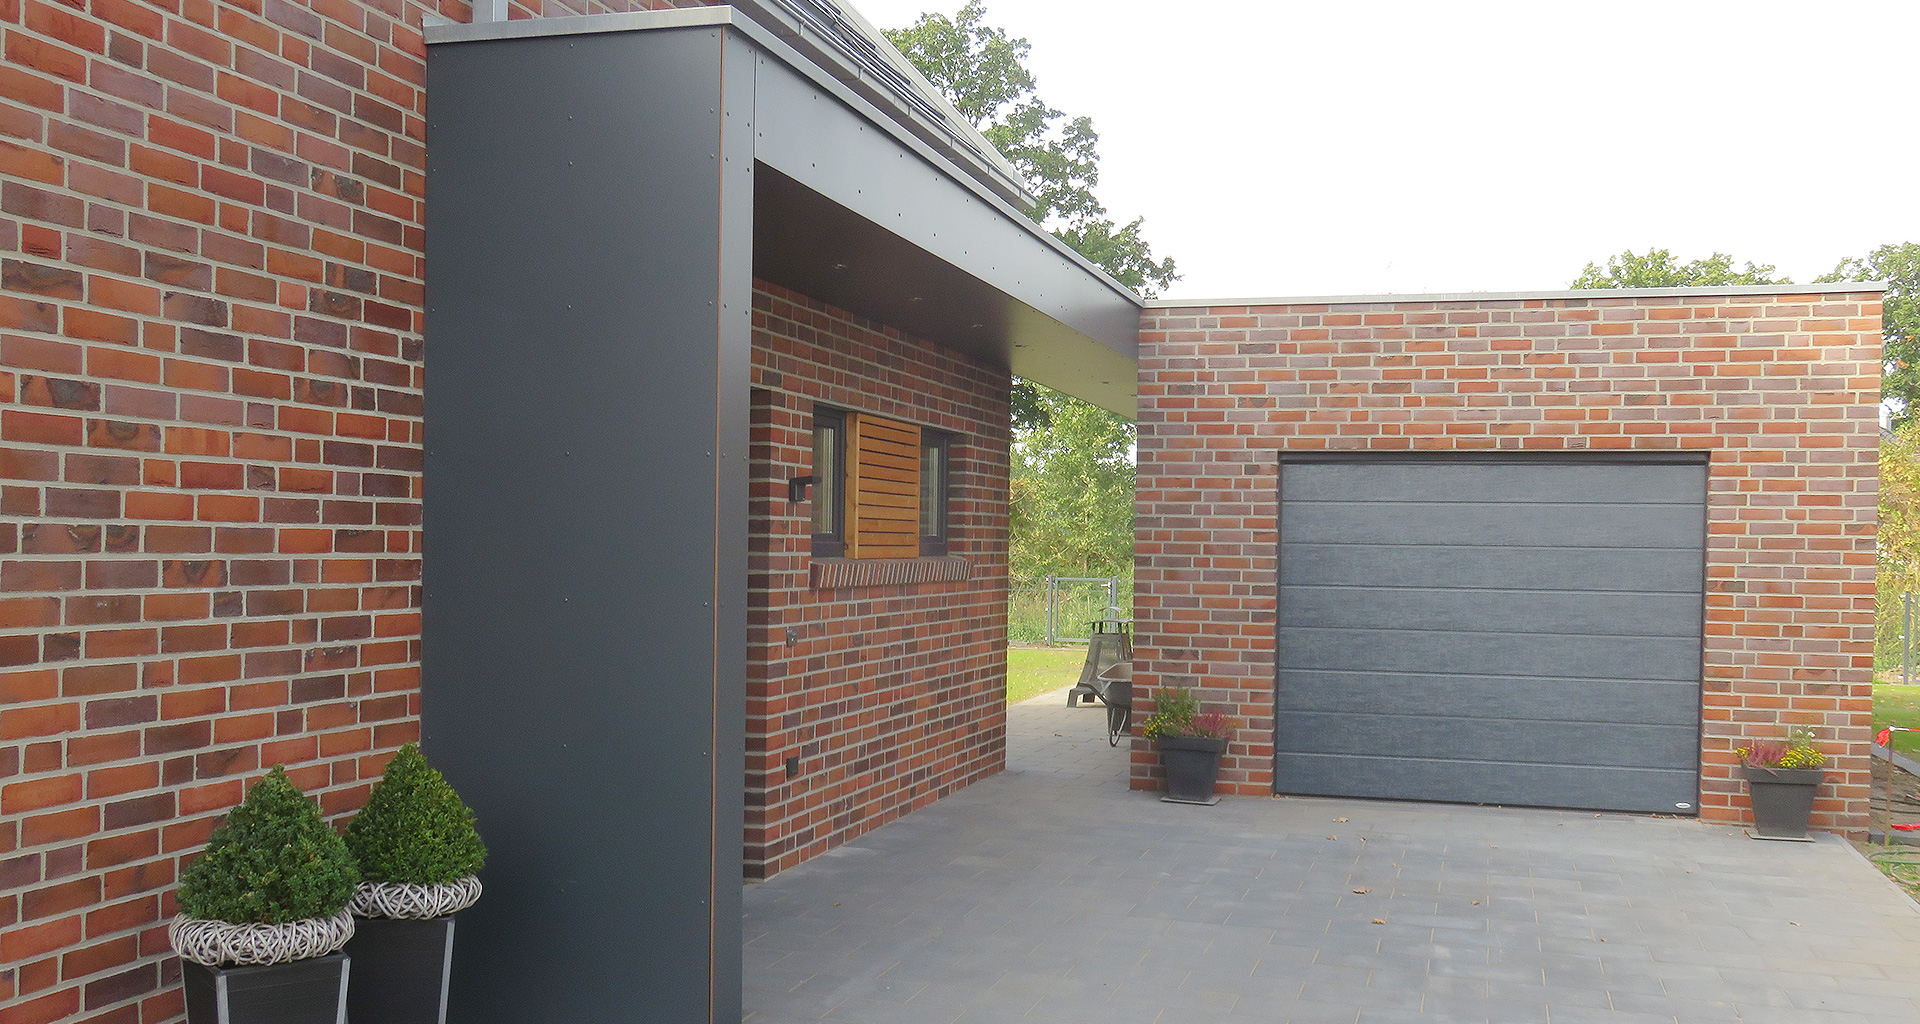 Einfamilienhaus Eingang mit Garage in Grafschaft Bentheim Nordhorn 2017